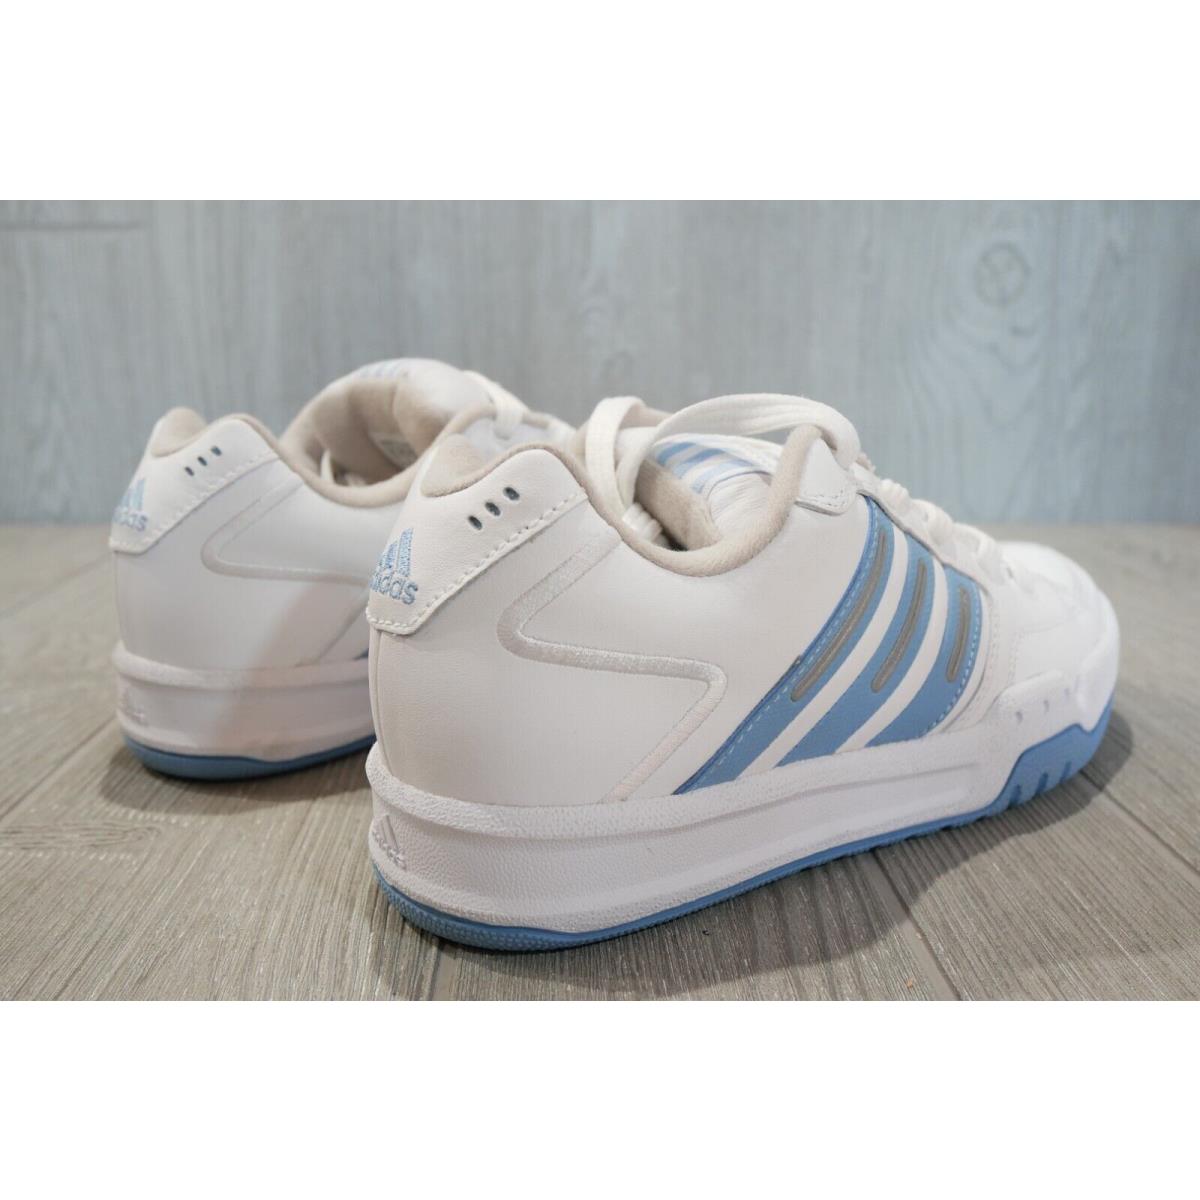 Vintage Adidas Beta II Skate White Shoes Size 7.5 | 692740144634 - Adidas shoes - White | SporTipTop